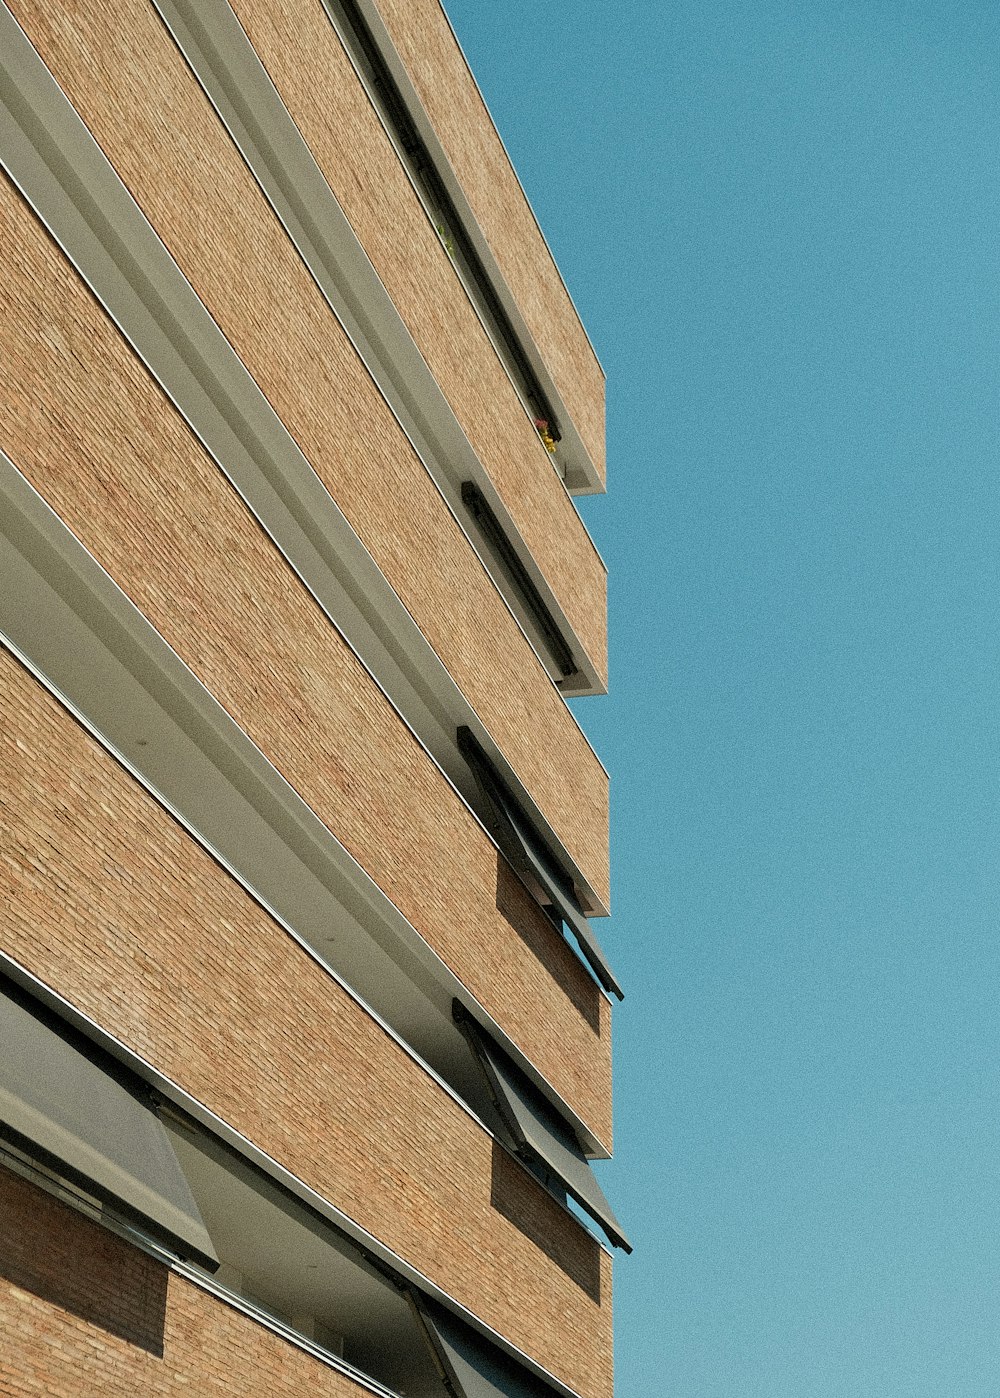 edifício de concreto marrom sob o céu azul durante o dia